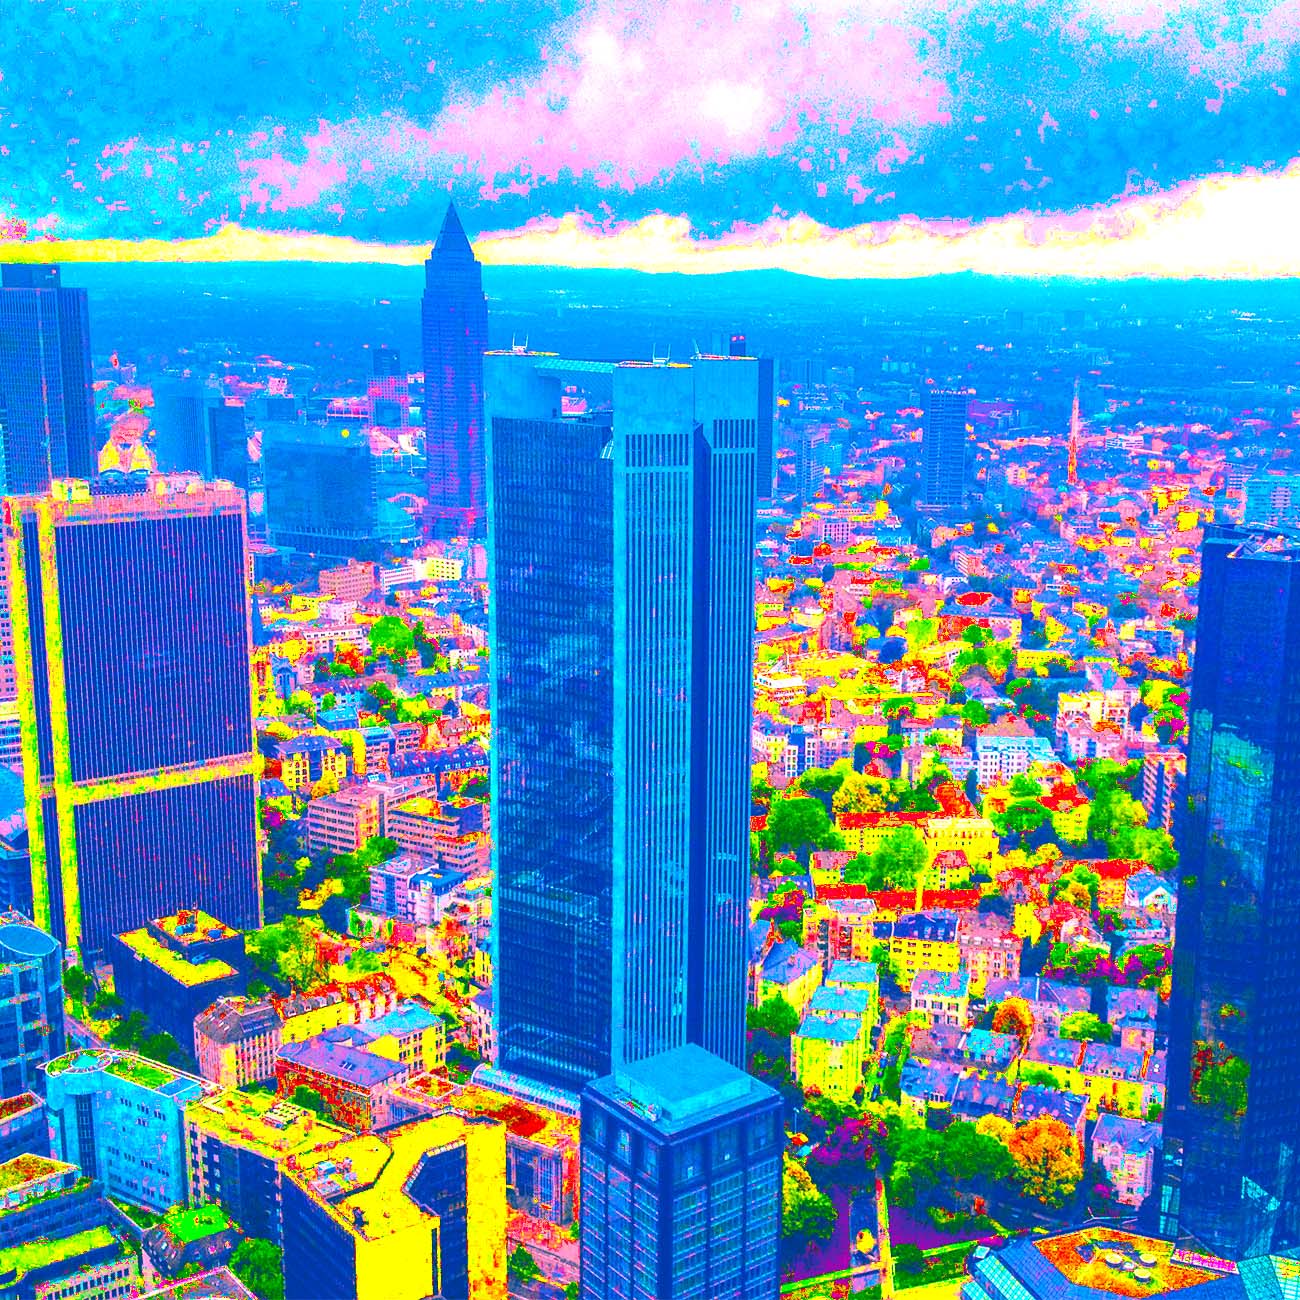 Popart Bild von Frankfurt mit blauen Hochhäusern und vielen kleineren Gebäuden in knallbunten Farben.